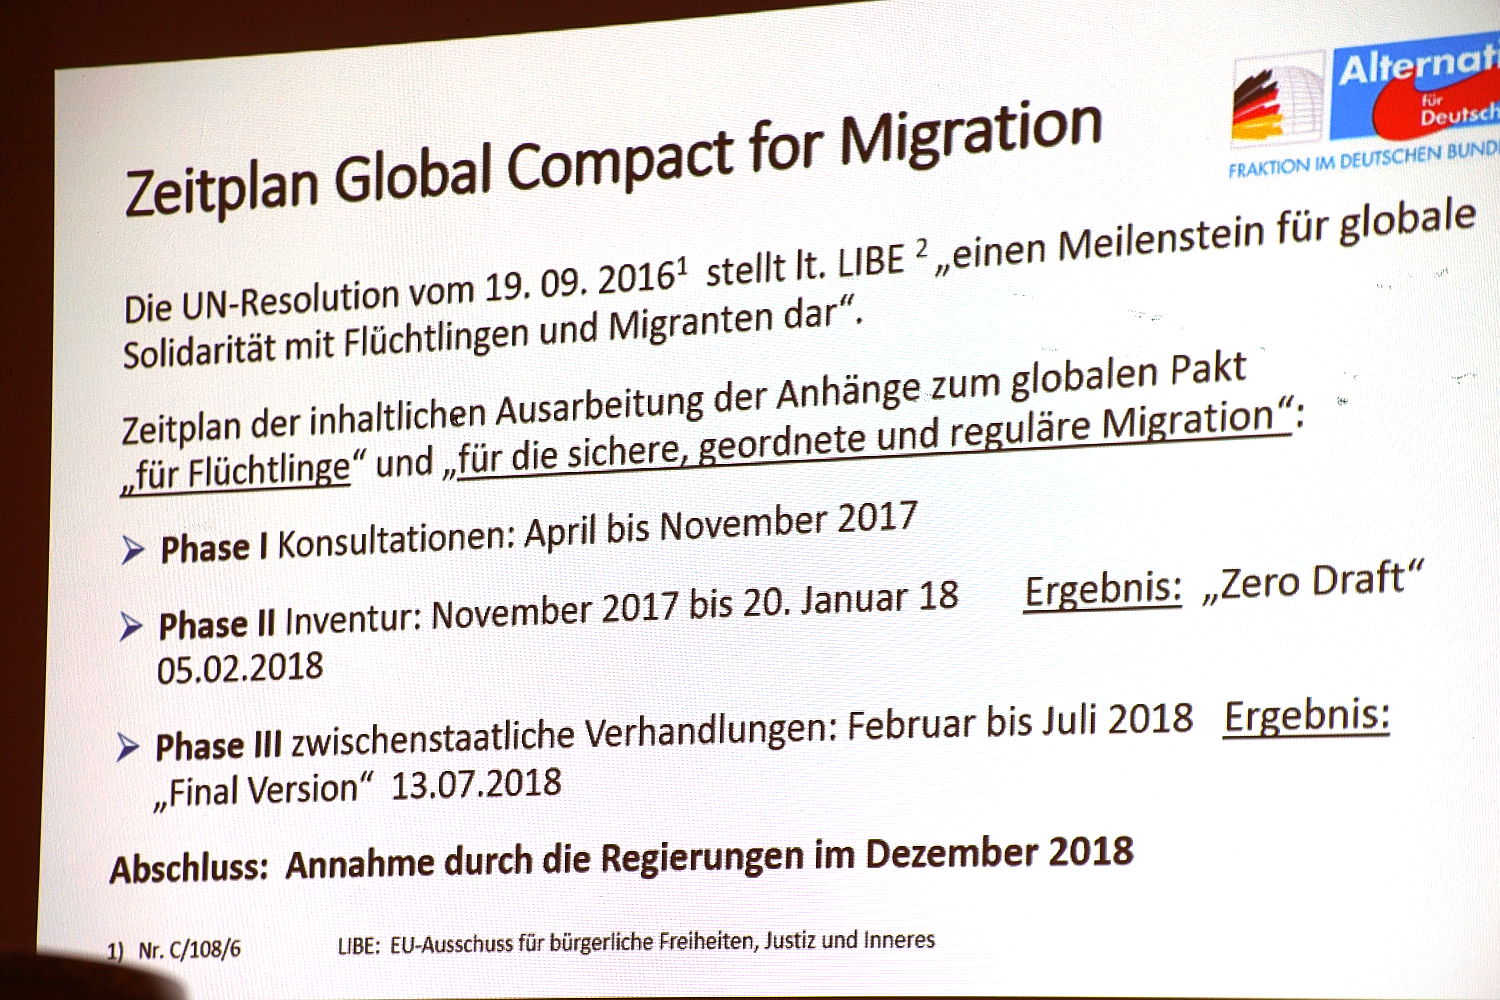 Zeitplan des Global Compact for Migration